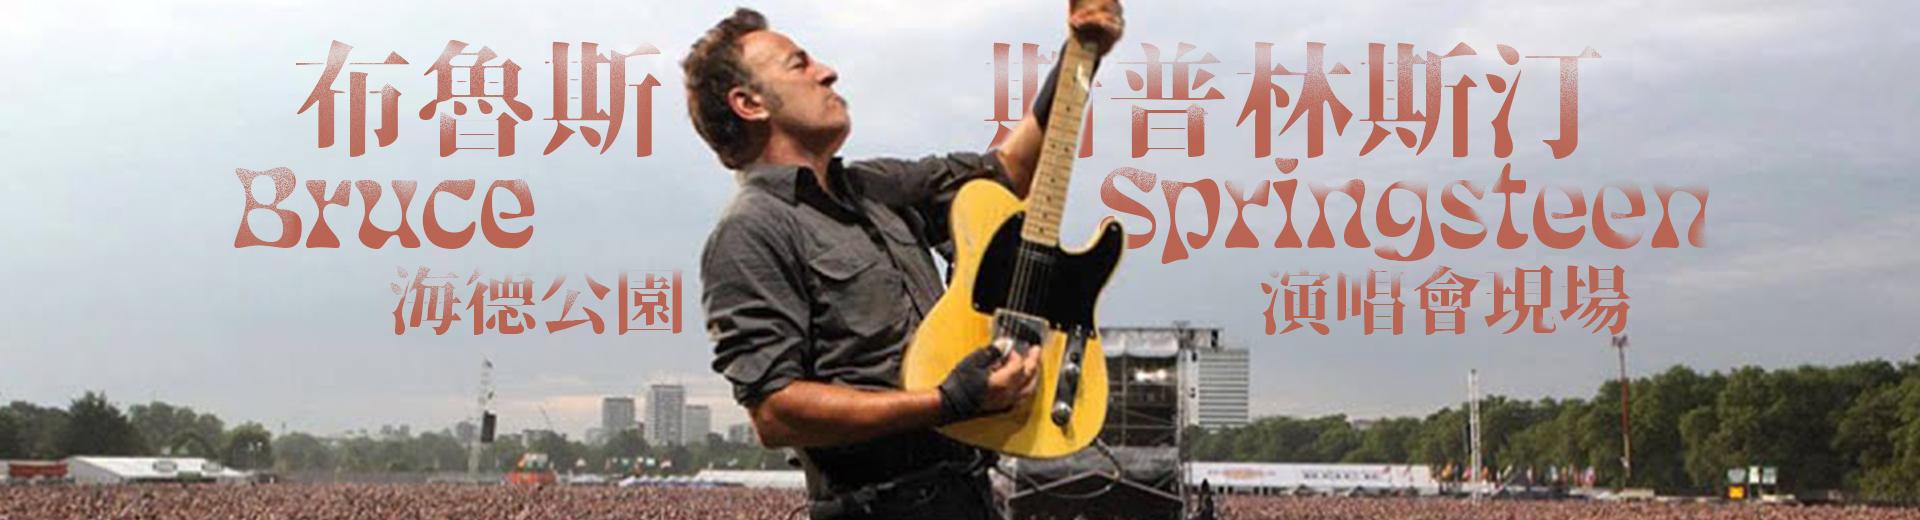 布魯斯斯普林斯汀—海德公園演唱會現場 Bruce Springsteen - Live in Hyde Park